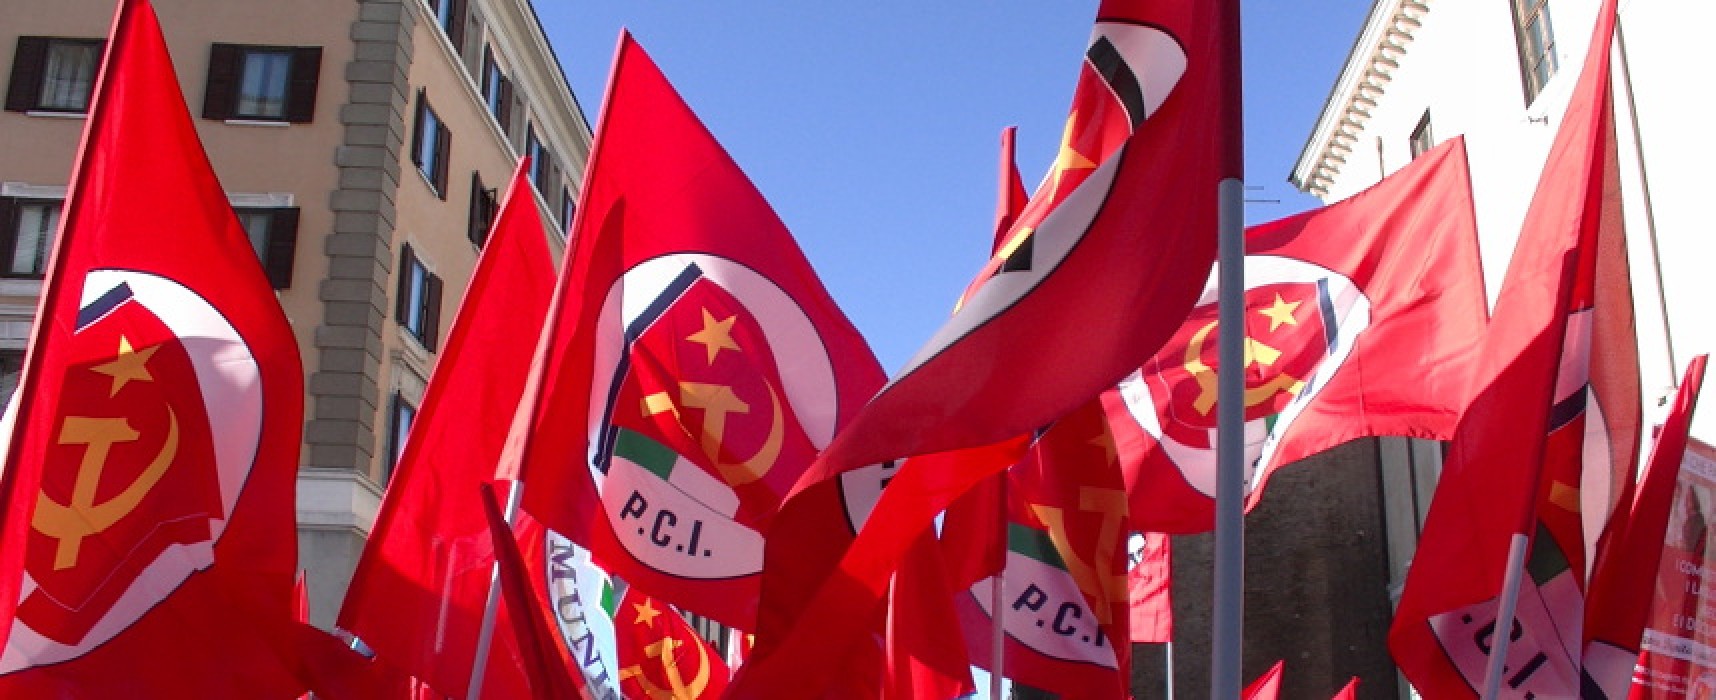 Politiche 2018, il Partito comunista biscegliese sceglie “Potere al Popolo”